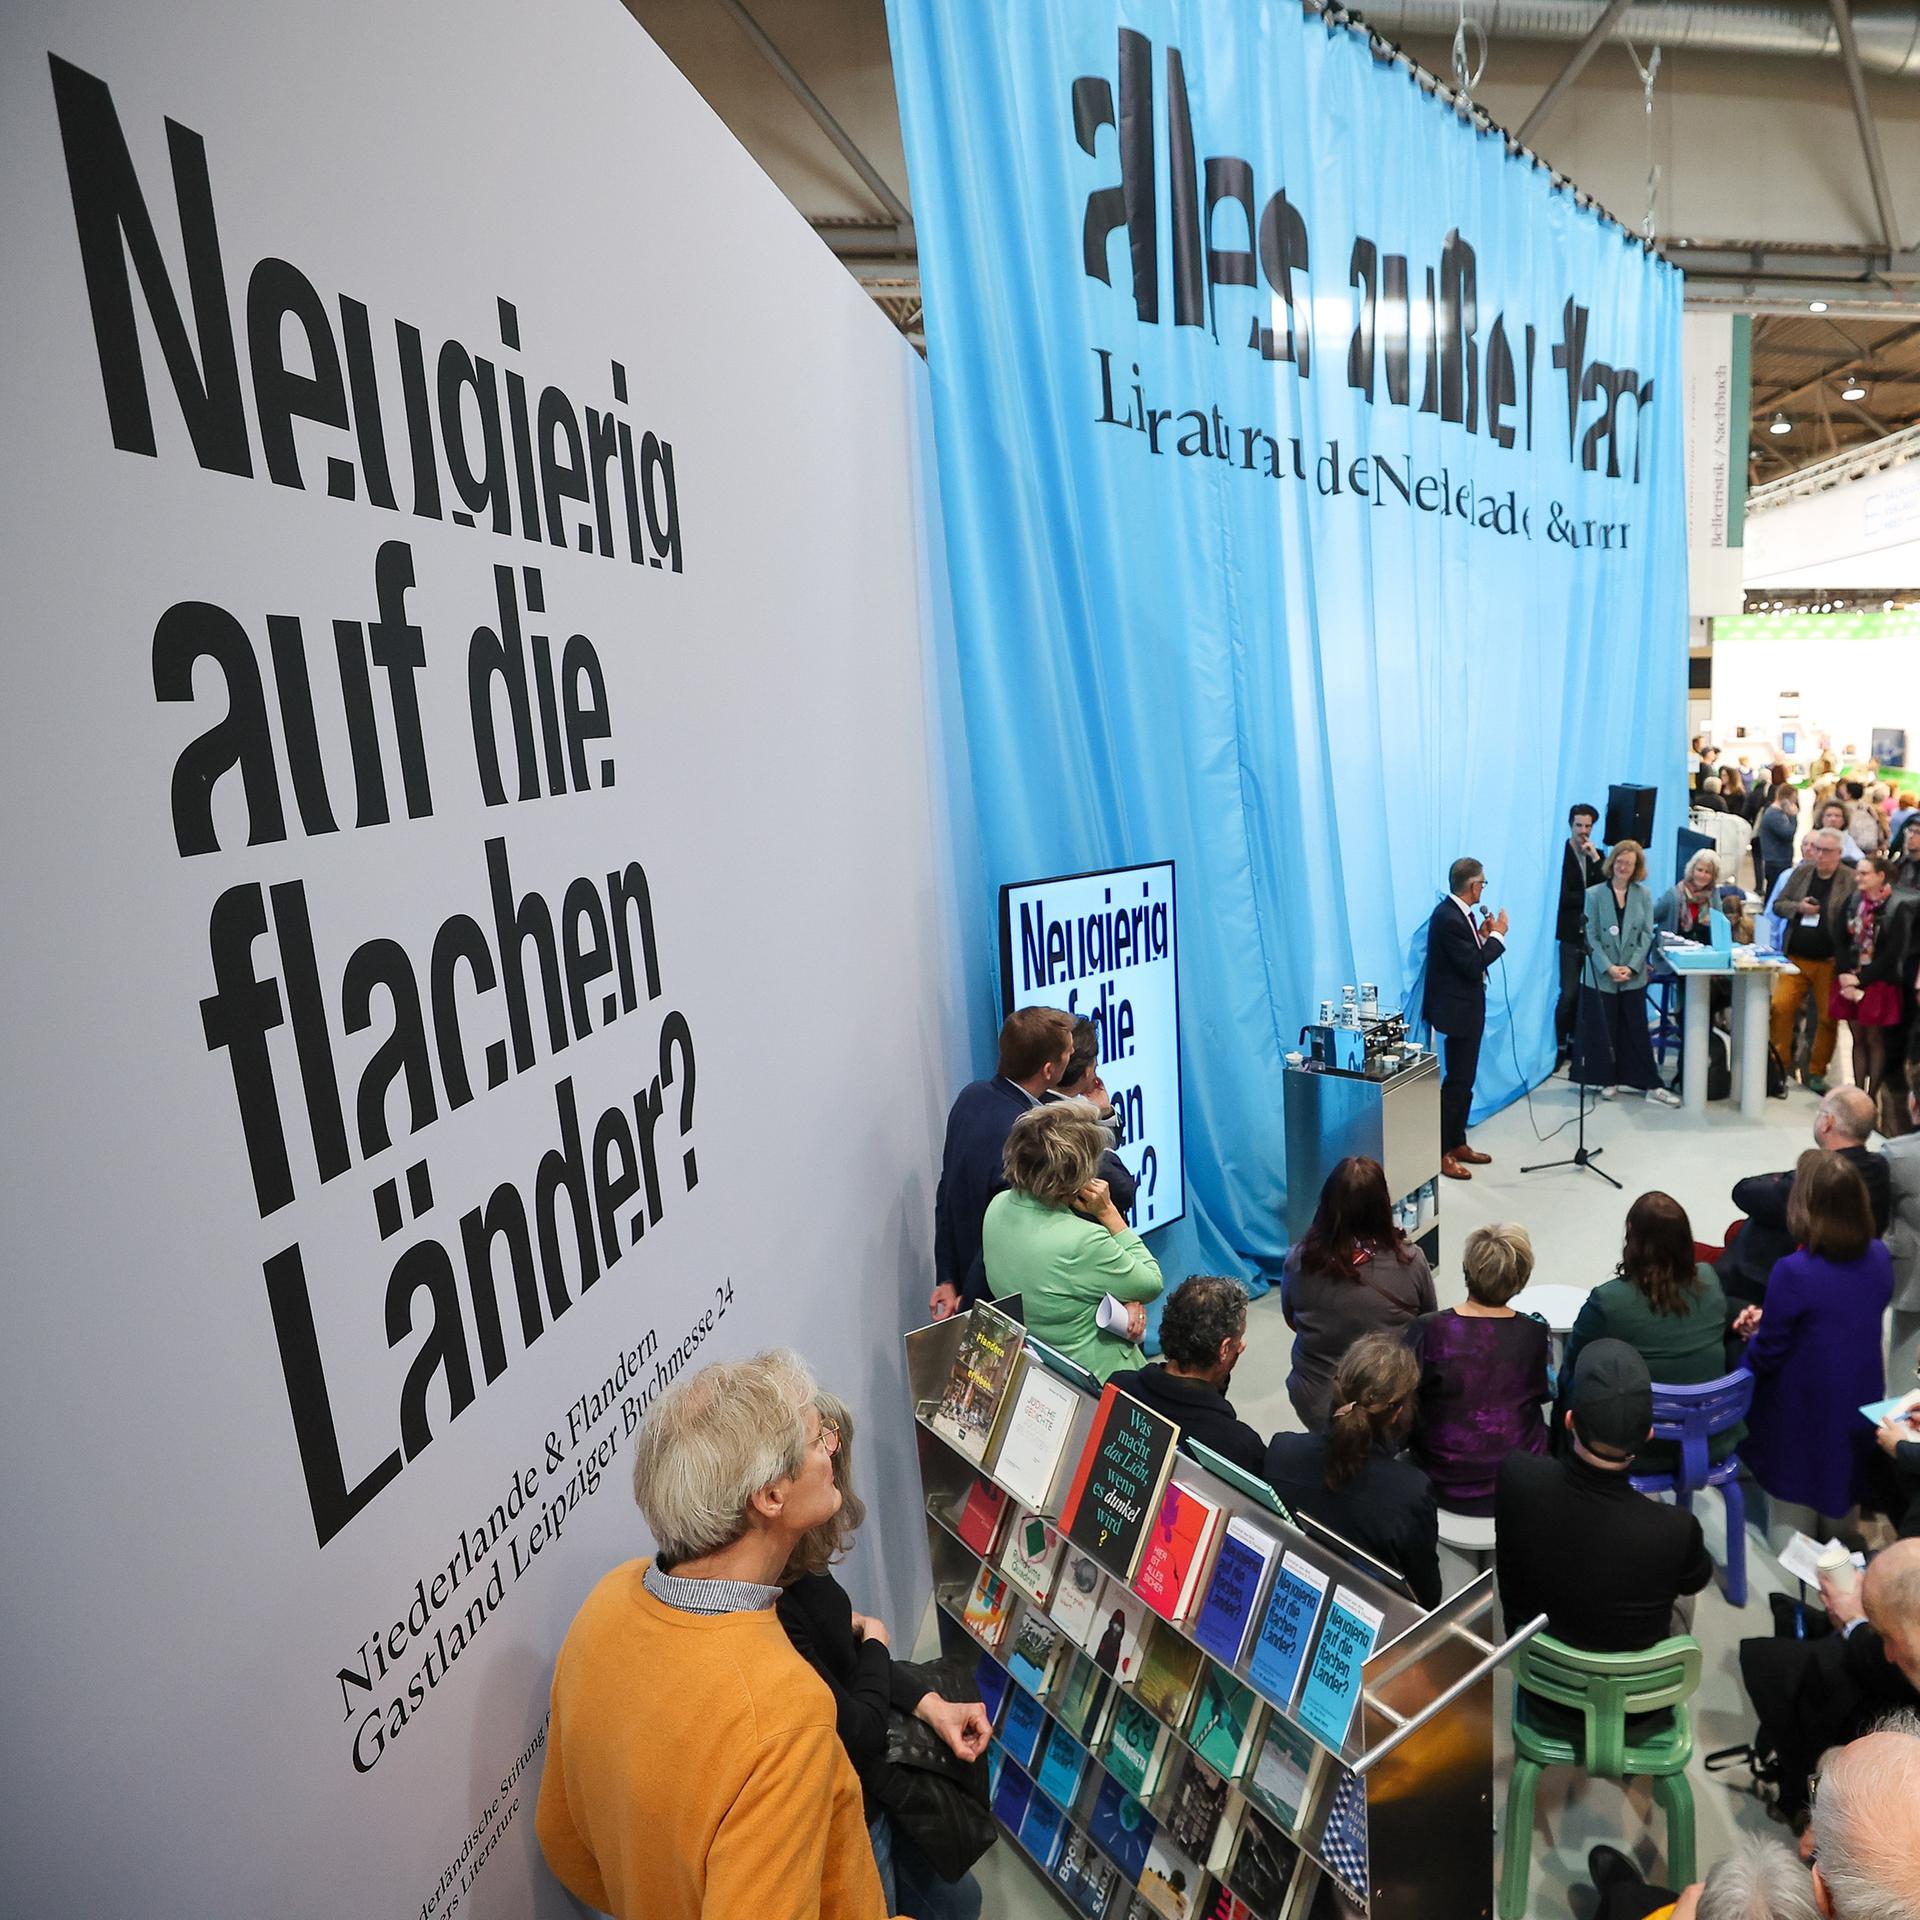 Leipziger Buchmesse – Die Niederlande und Flandern haben keine Angst vor Tabus